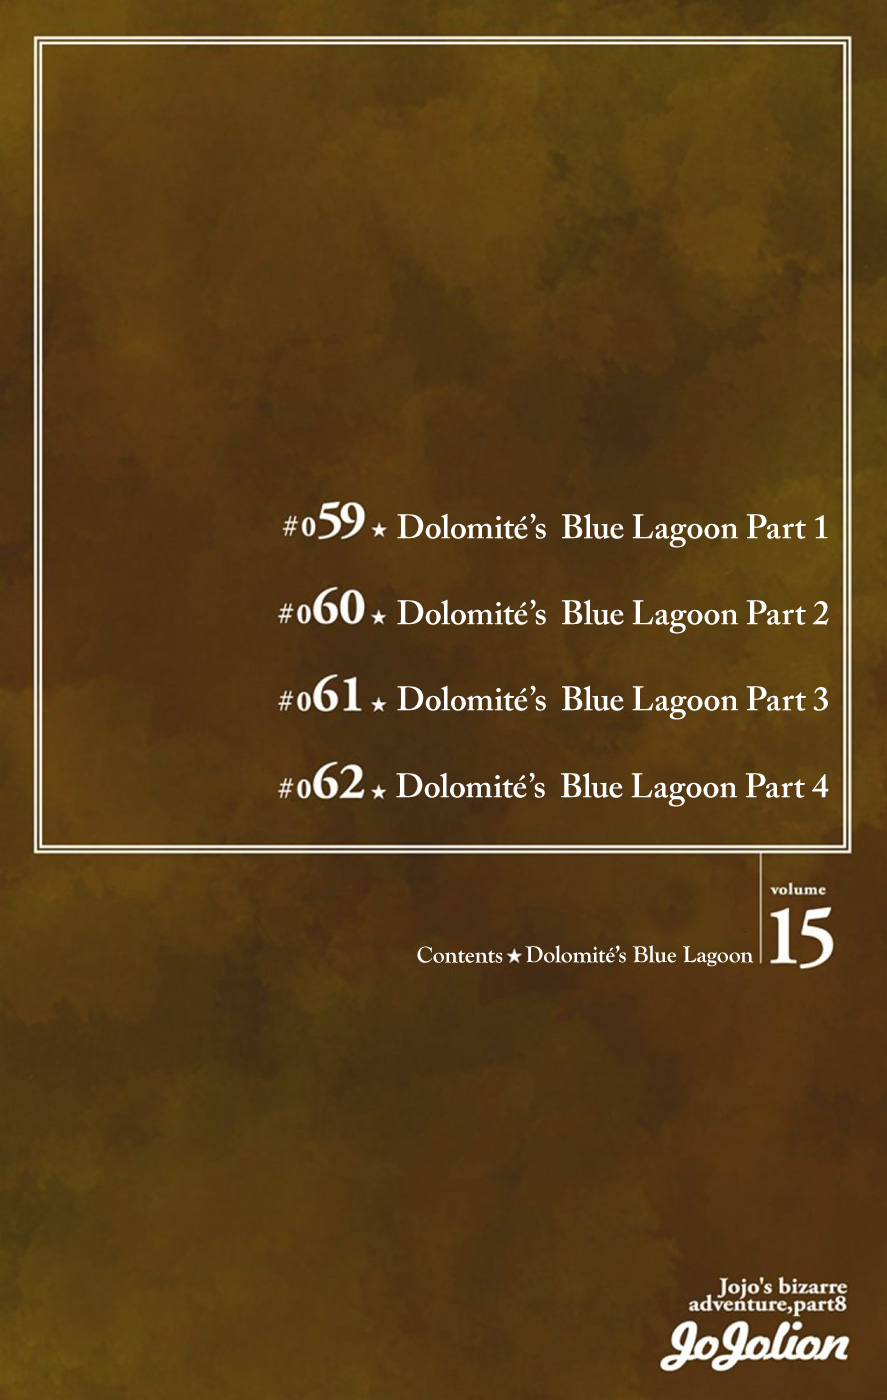 JoJo's Bizarre Adventure Part 8 JoJolion [Official Colored] Vol. 15 Ch. 59 Dolomité's Blue Lagoon Part 1